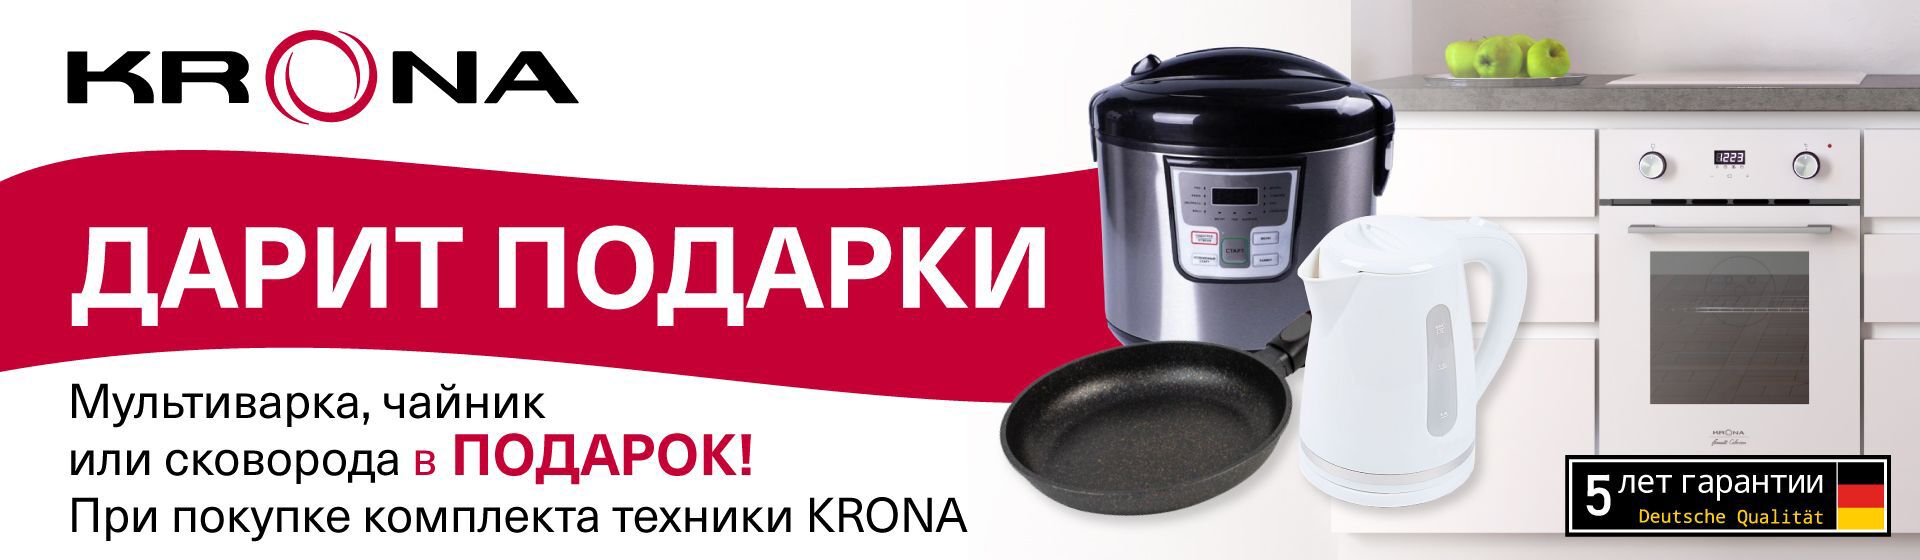 Мультиварка, чайник или сковорода в ПОДАРОК при покупке комплекта бытовой техники КРОНА.